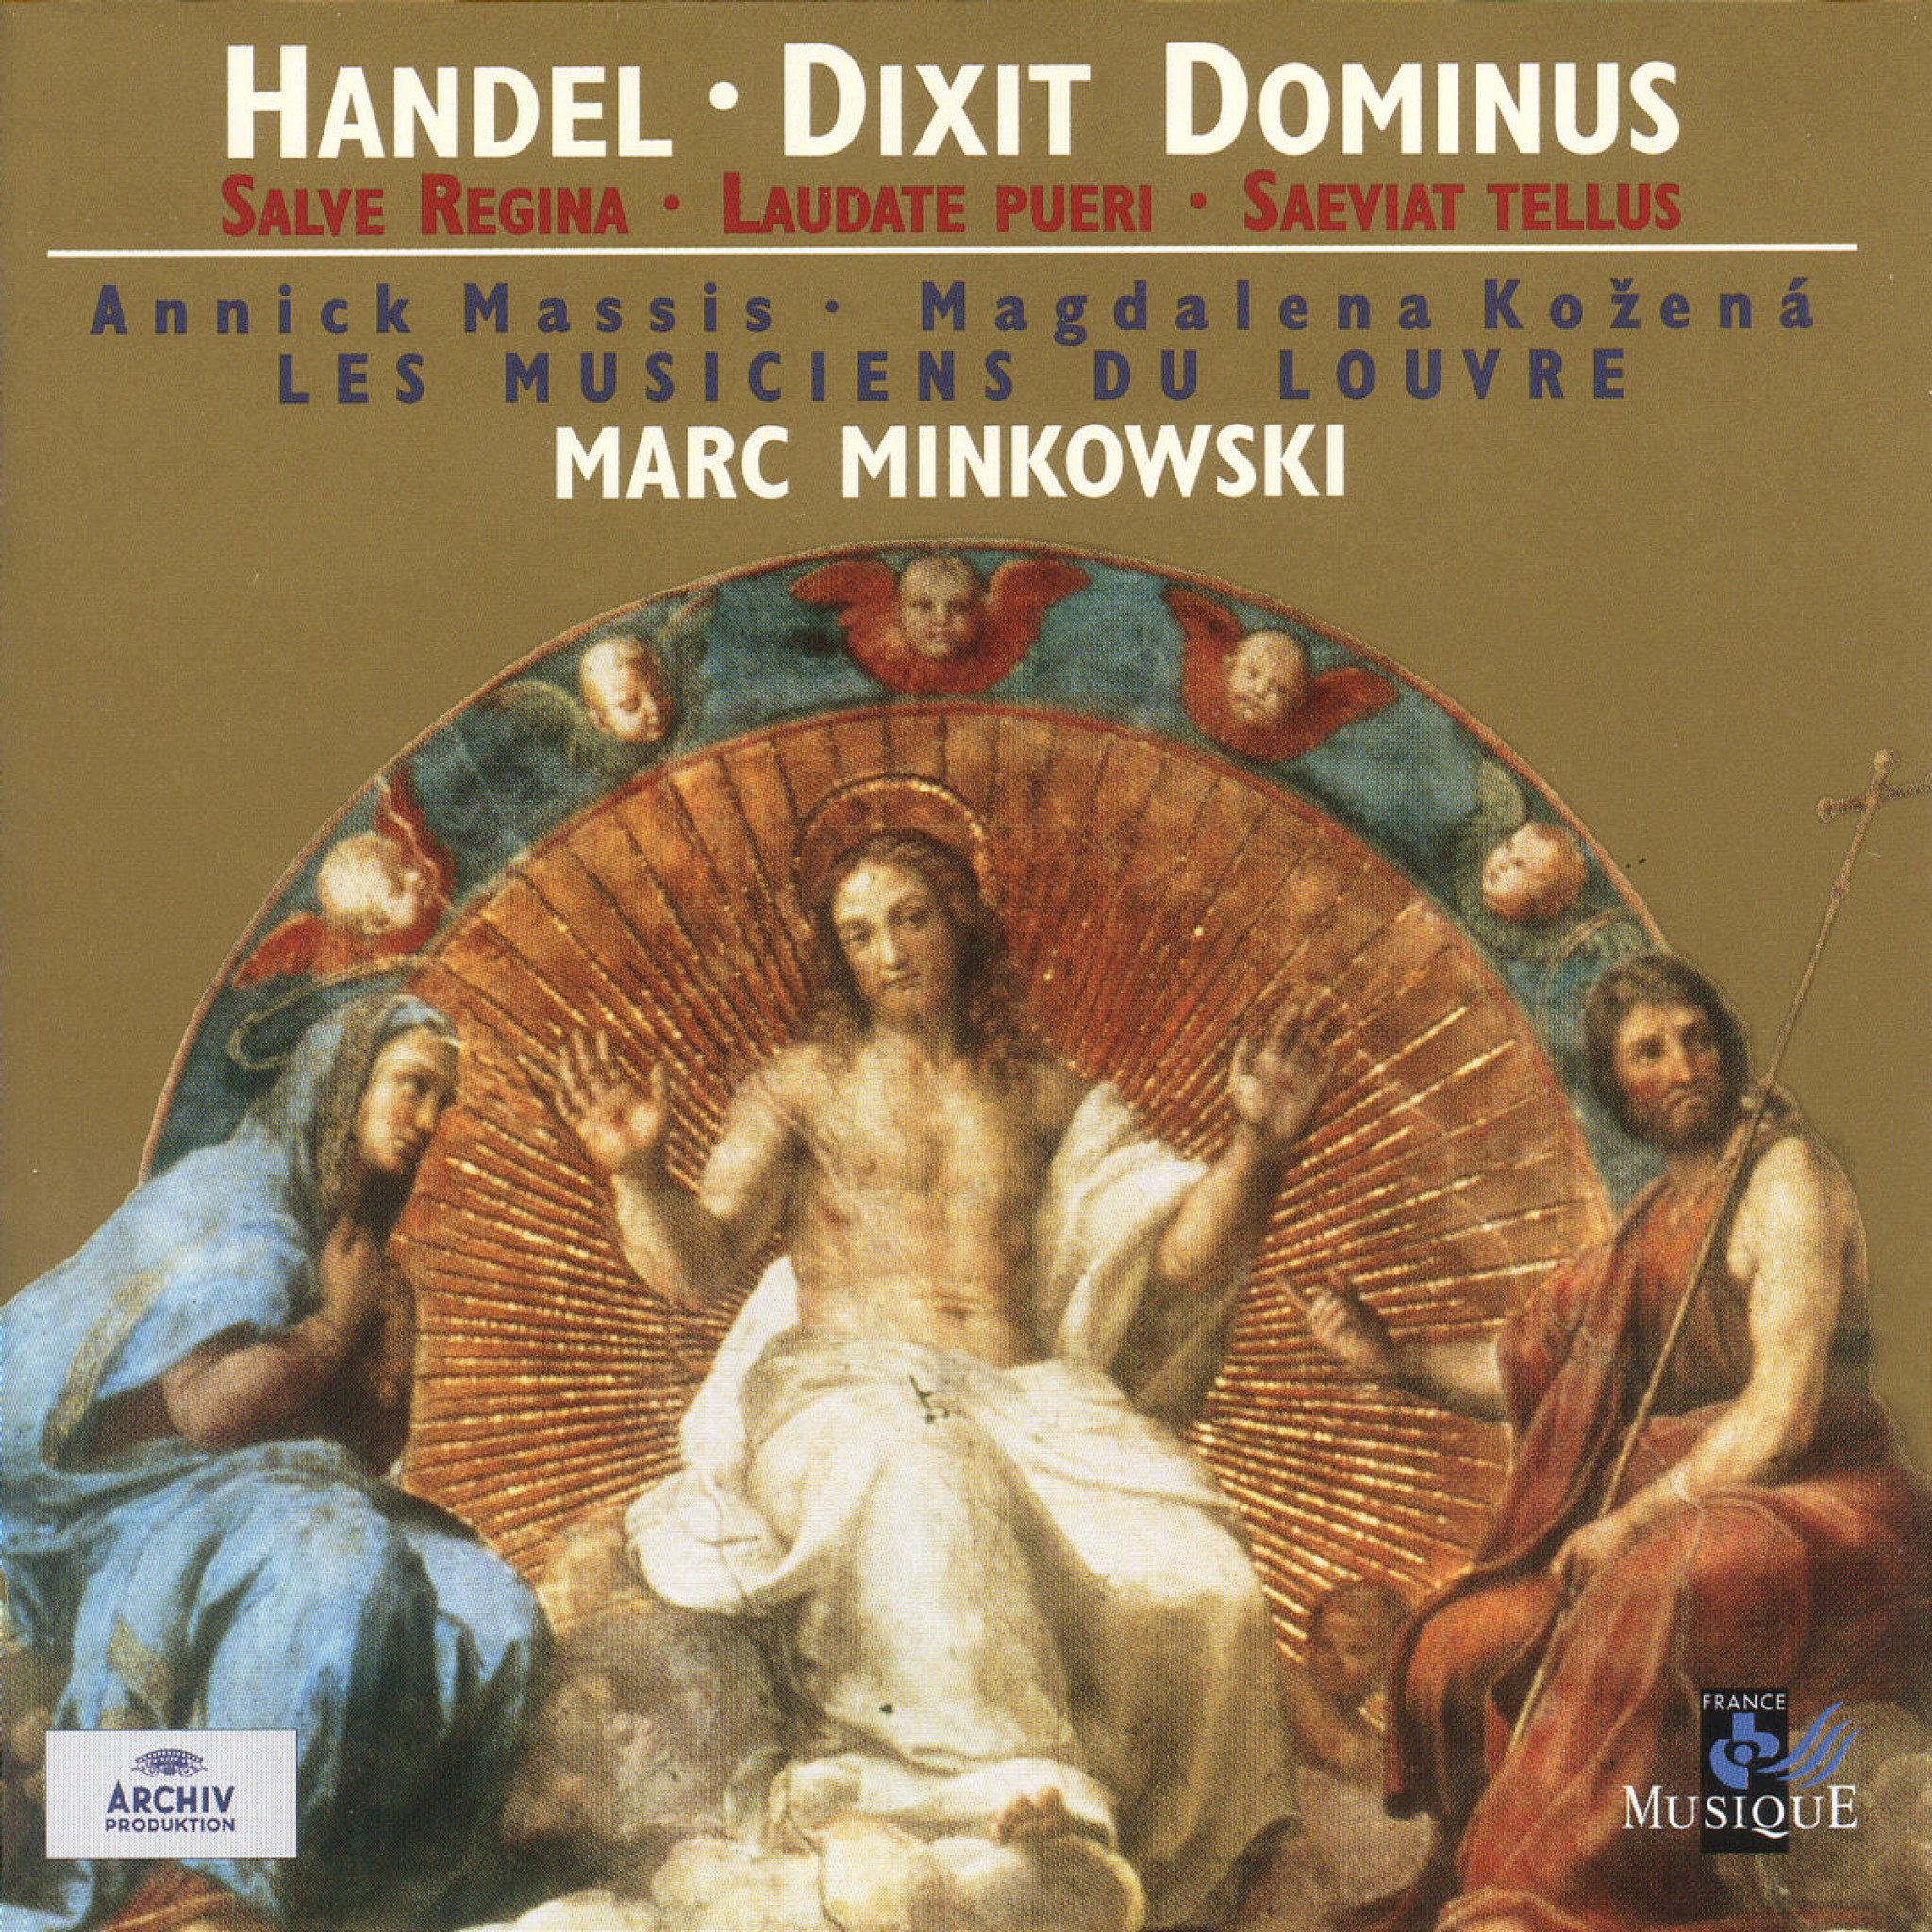 Handel: Dixit Dominus; Salve Regina; Laudate Pueri; Saeviat Tellus 0028945962722